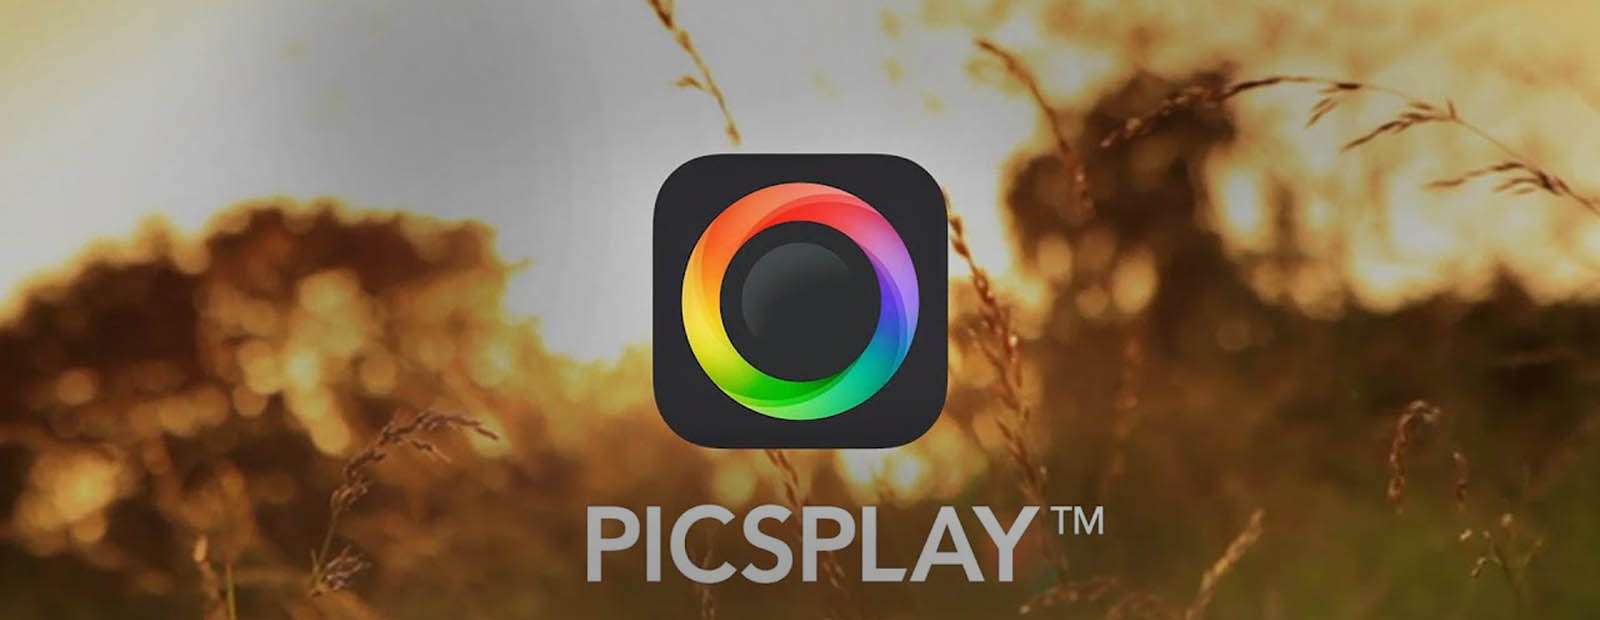 PICSPLAY 2 - редактор фото в IPhone